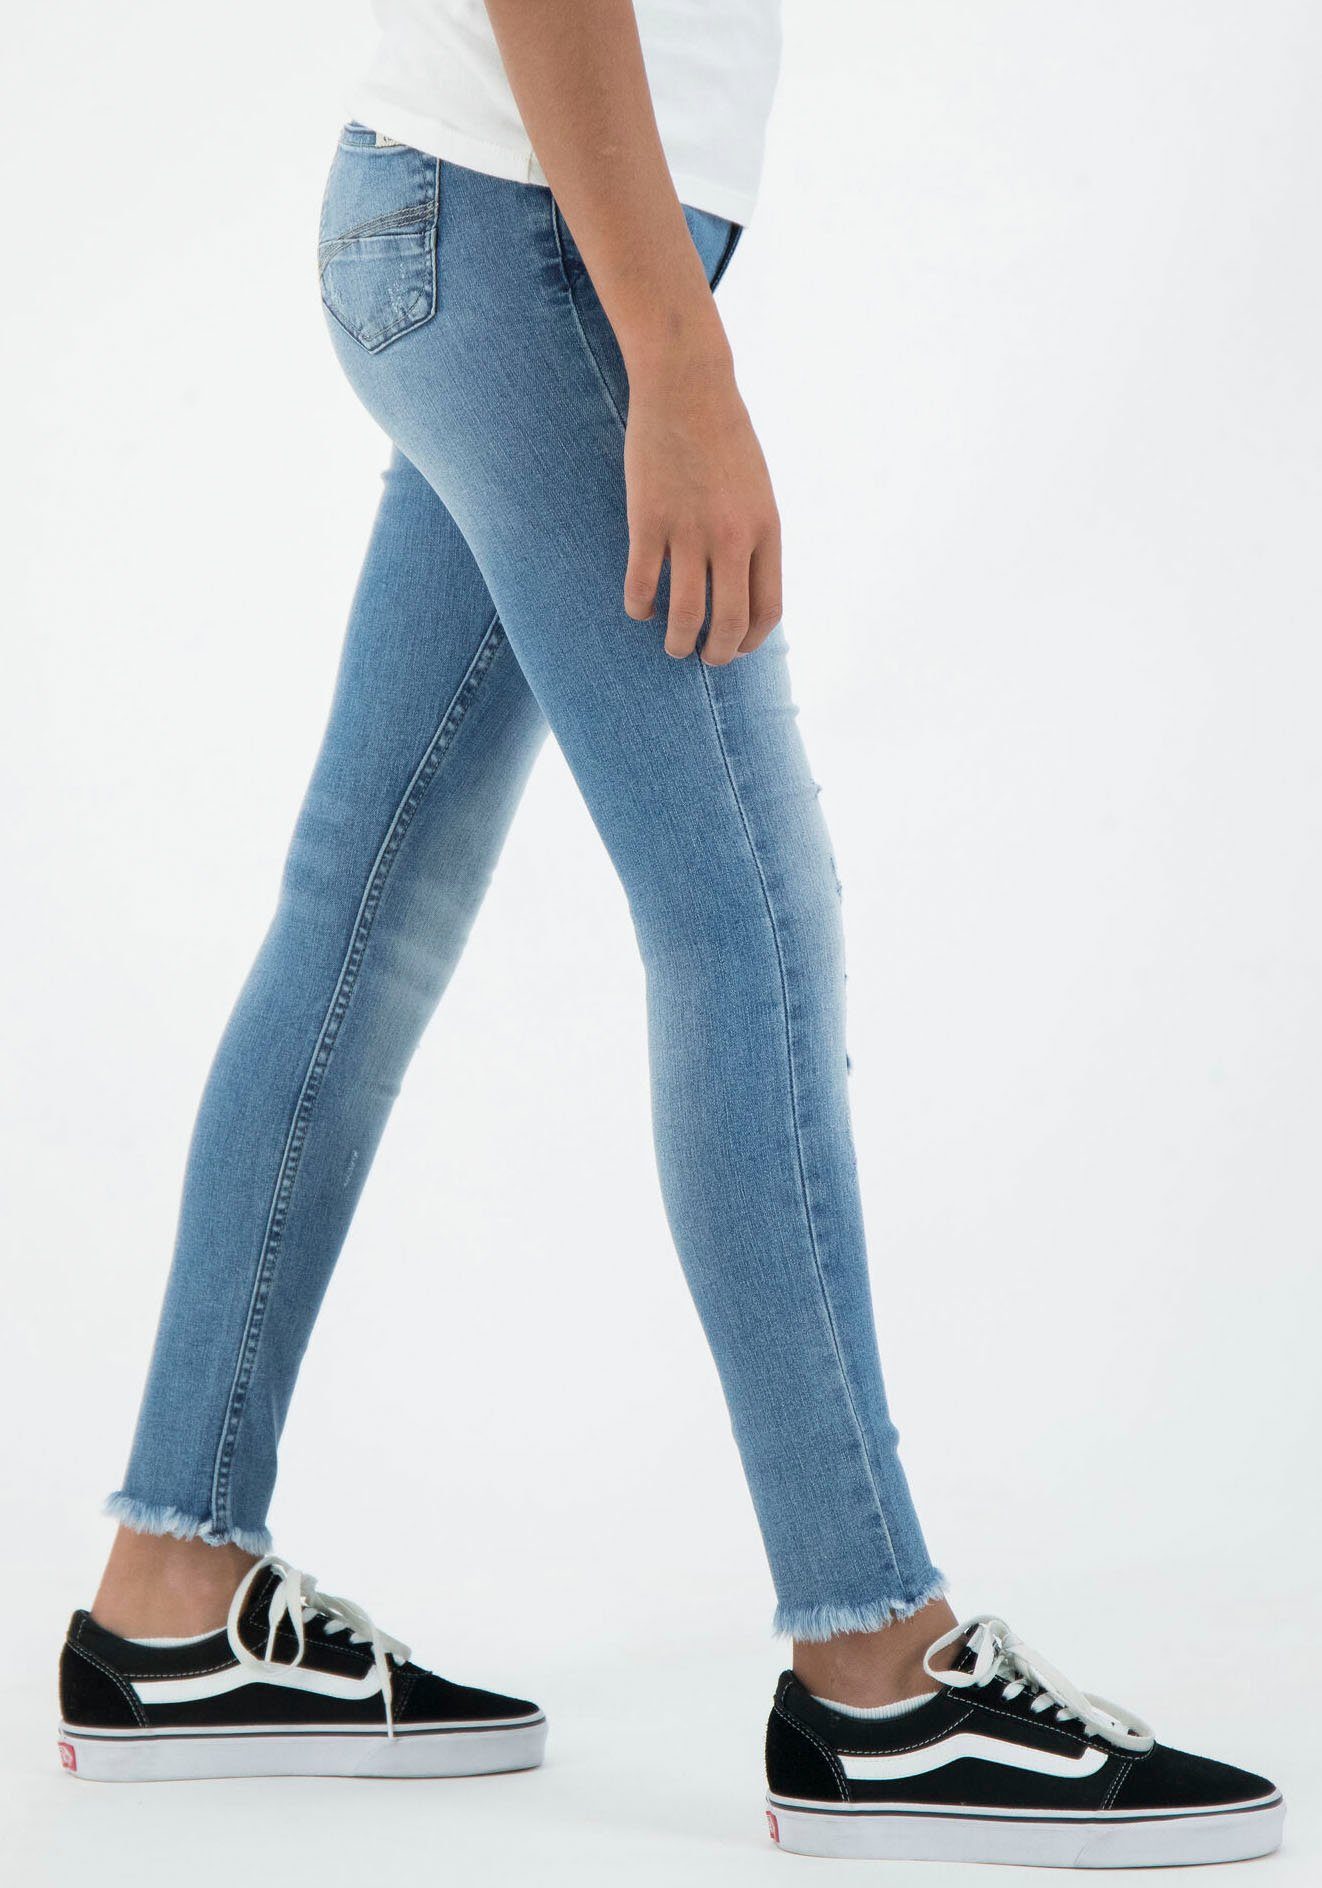 570 Stretch-Jeans mit Garcia Rianna Destroyed-Effekten